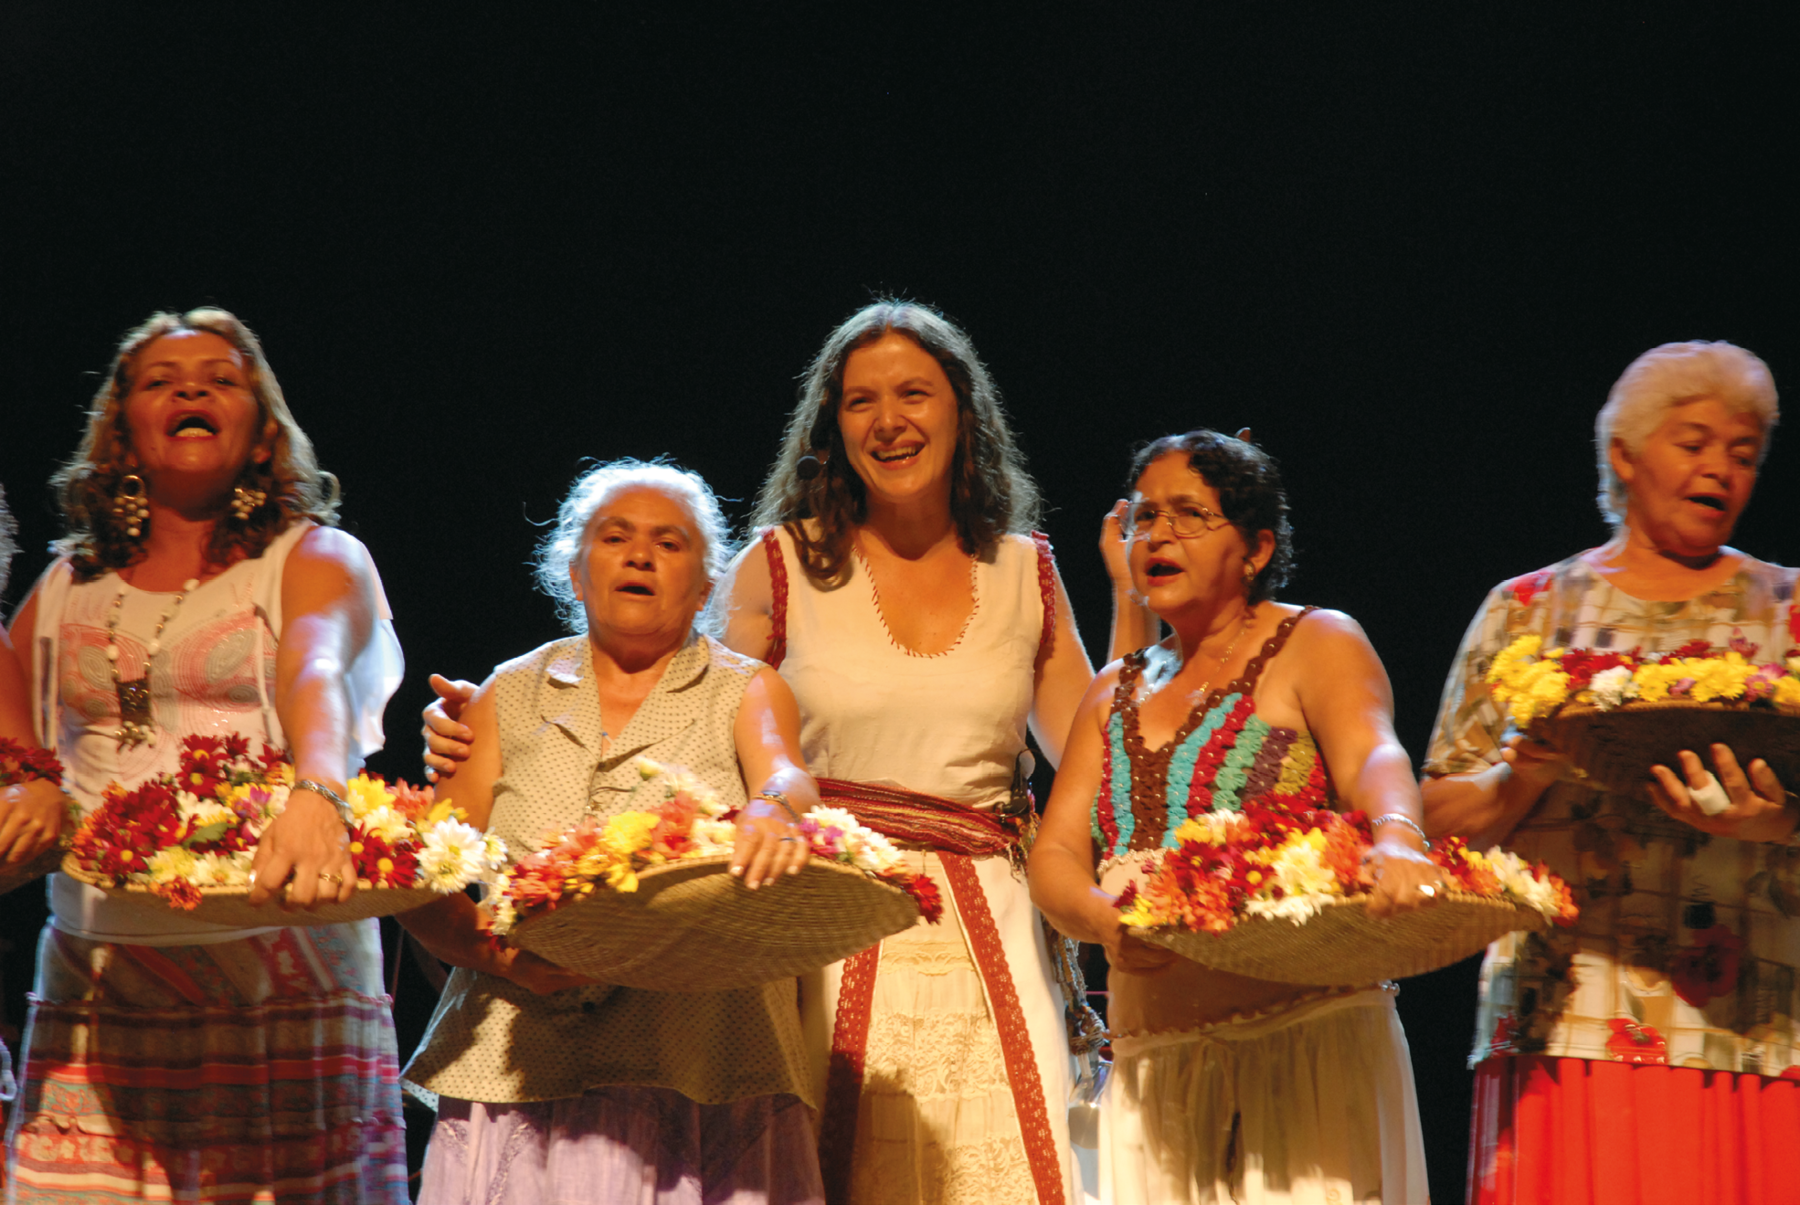 Fotografia. Cinco mulheres perfiladas e sorrindo; todas estão em pé e quatro delas seguram um cesto redondo cheio de flores. Ao centro, há uma mulher usando vestido branco e sorrindo, enquanto as demais cantam.